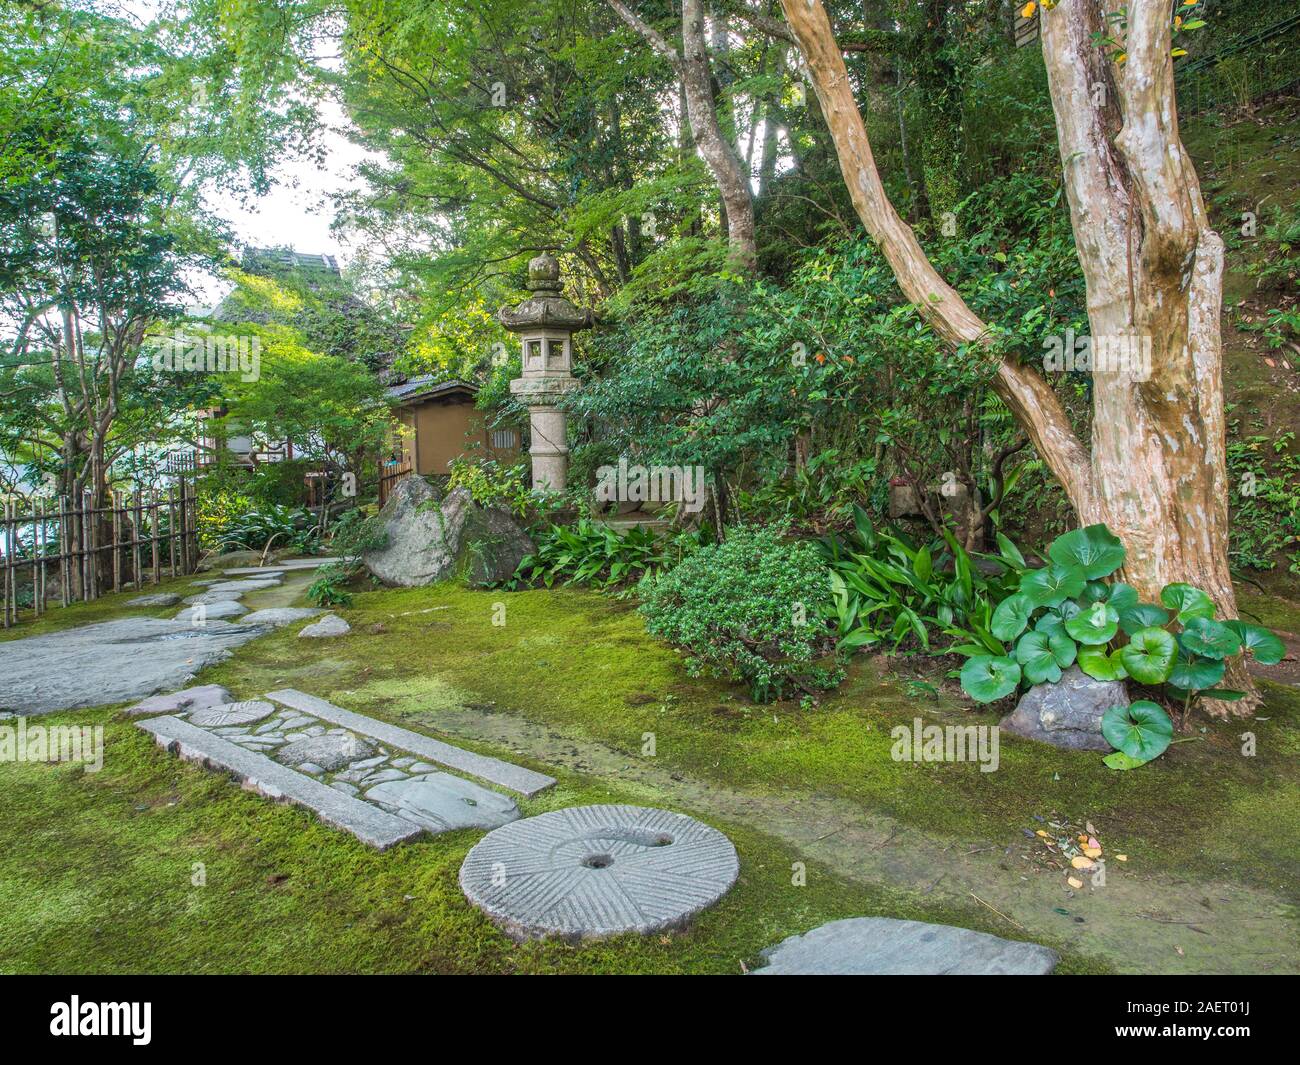 Jardín japonés con ishidoro linterna de piedra cubiertas de musgo, tierra, piedra de paso camino a la ermita, Garyusanso Furoan, Ozu, Ehime, Shikoku Japón Foto de stock